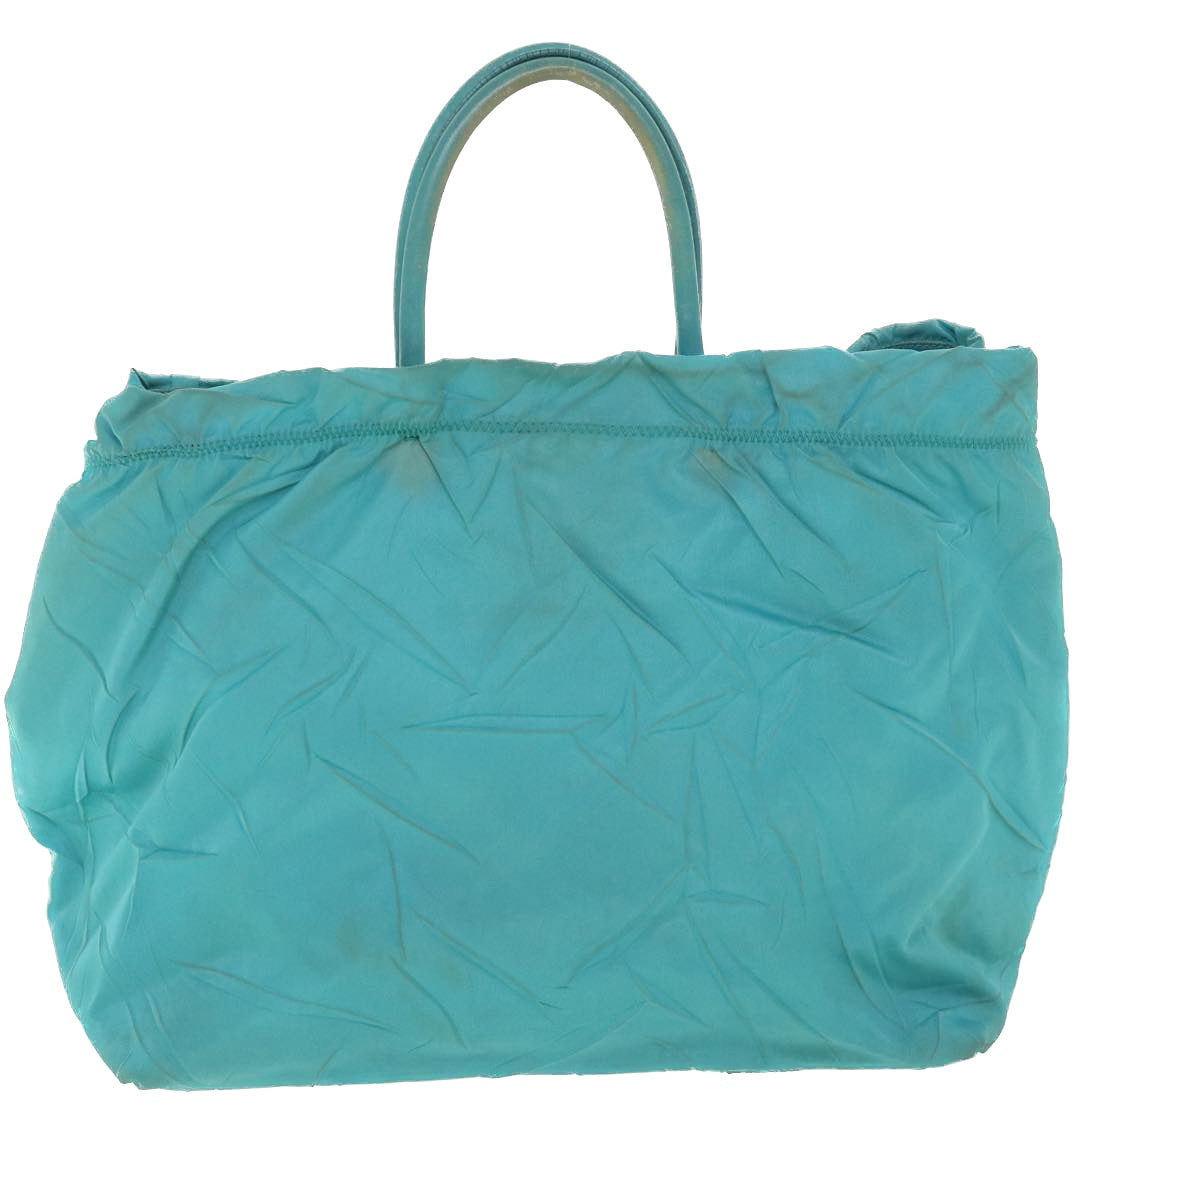 PRADA Hand Bag Nylon Light Blue Auth bs8597 - 0